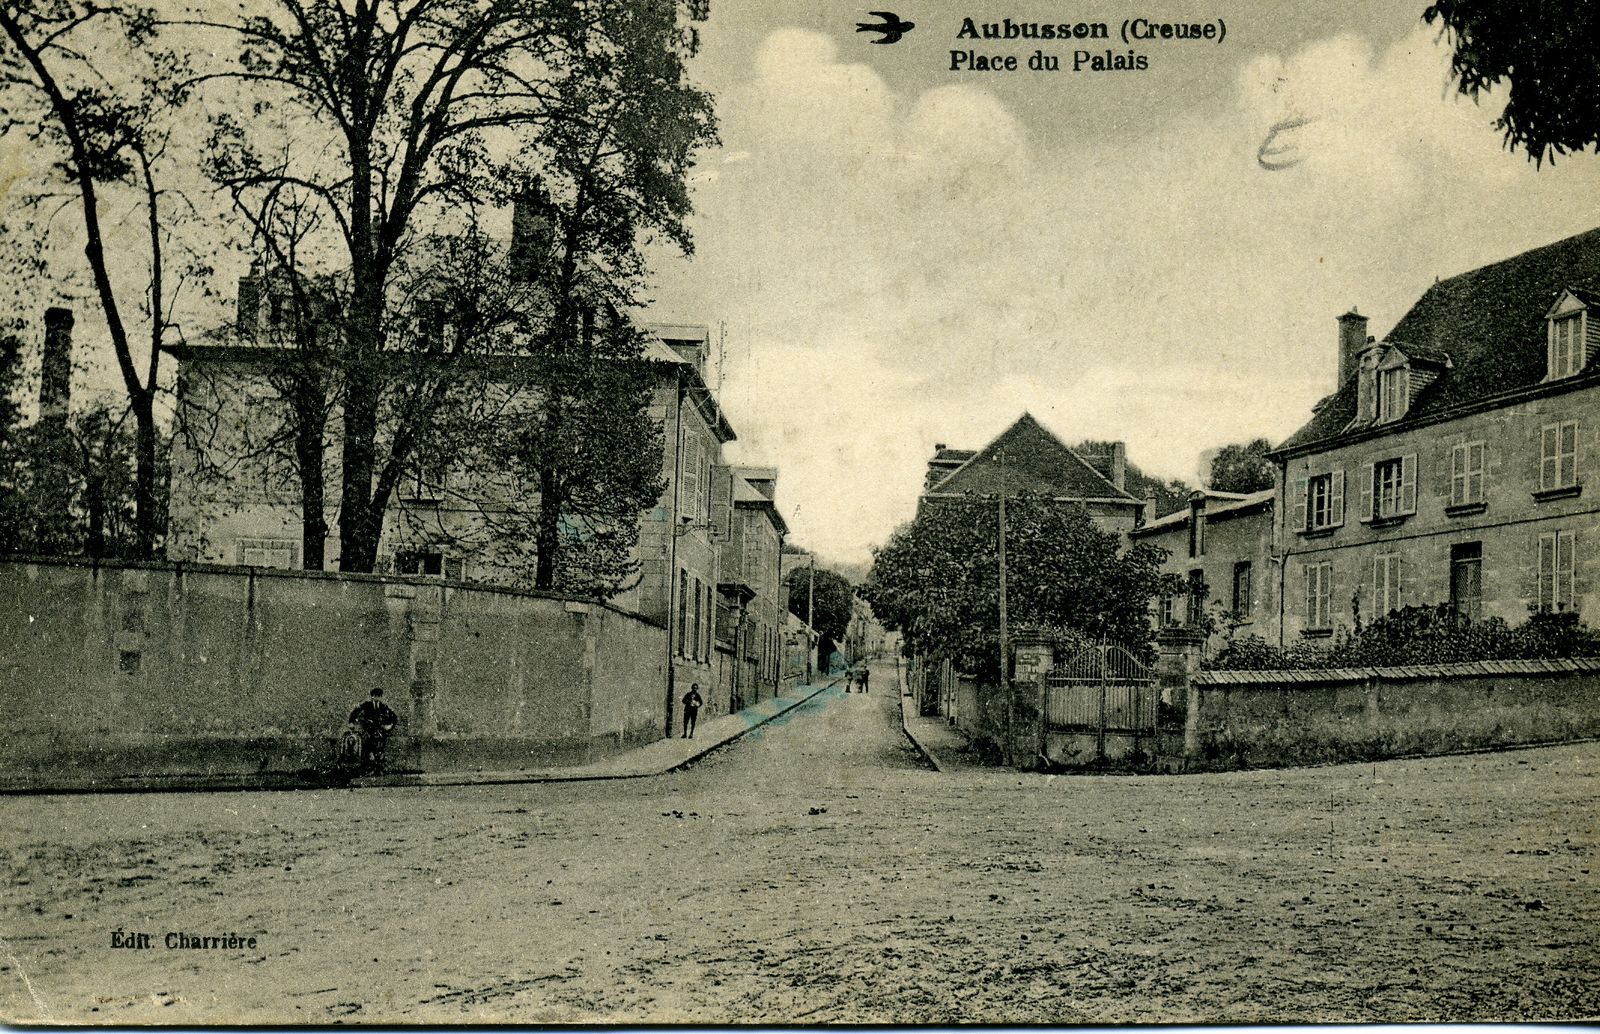 Carte postale de la place du Palais (actuelle place Maurice Dayras), au début du 20e siècle, en direction de la rue Saint-Jean (AD Creuse). On y distingue, à gauche, la banque de France. 